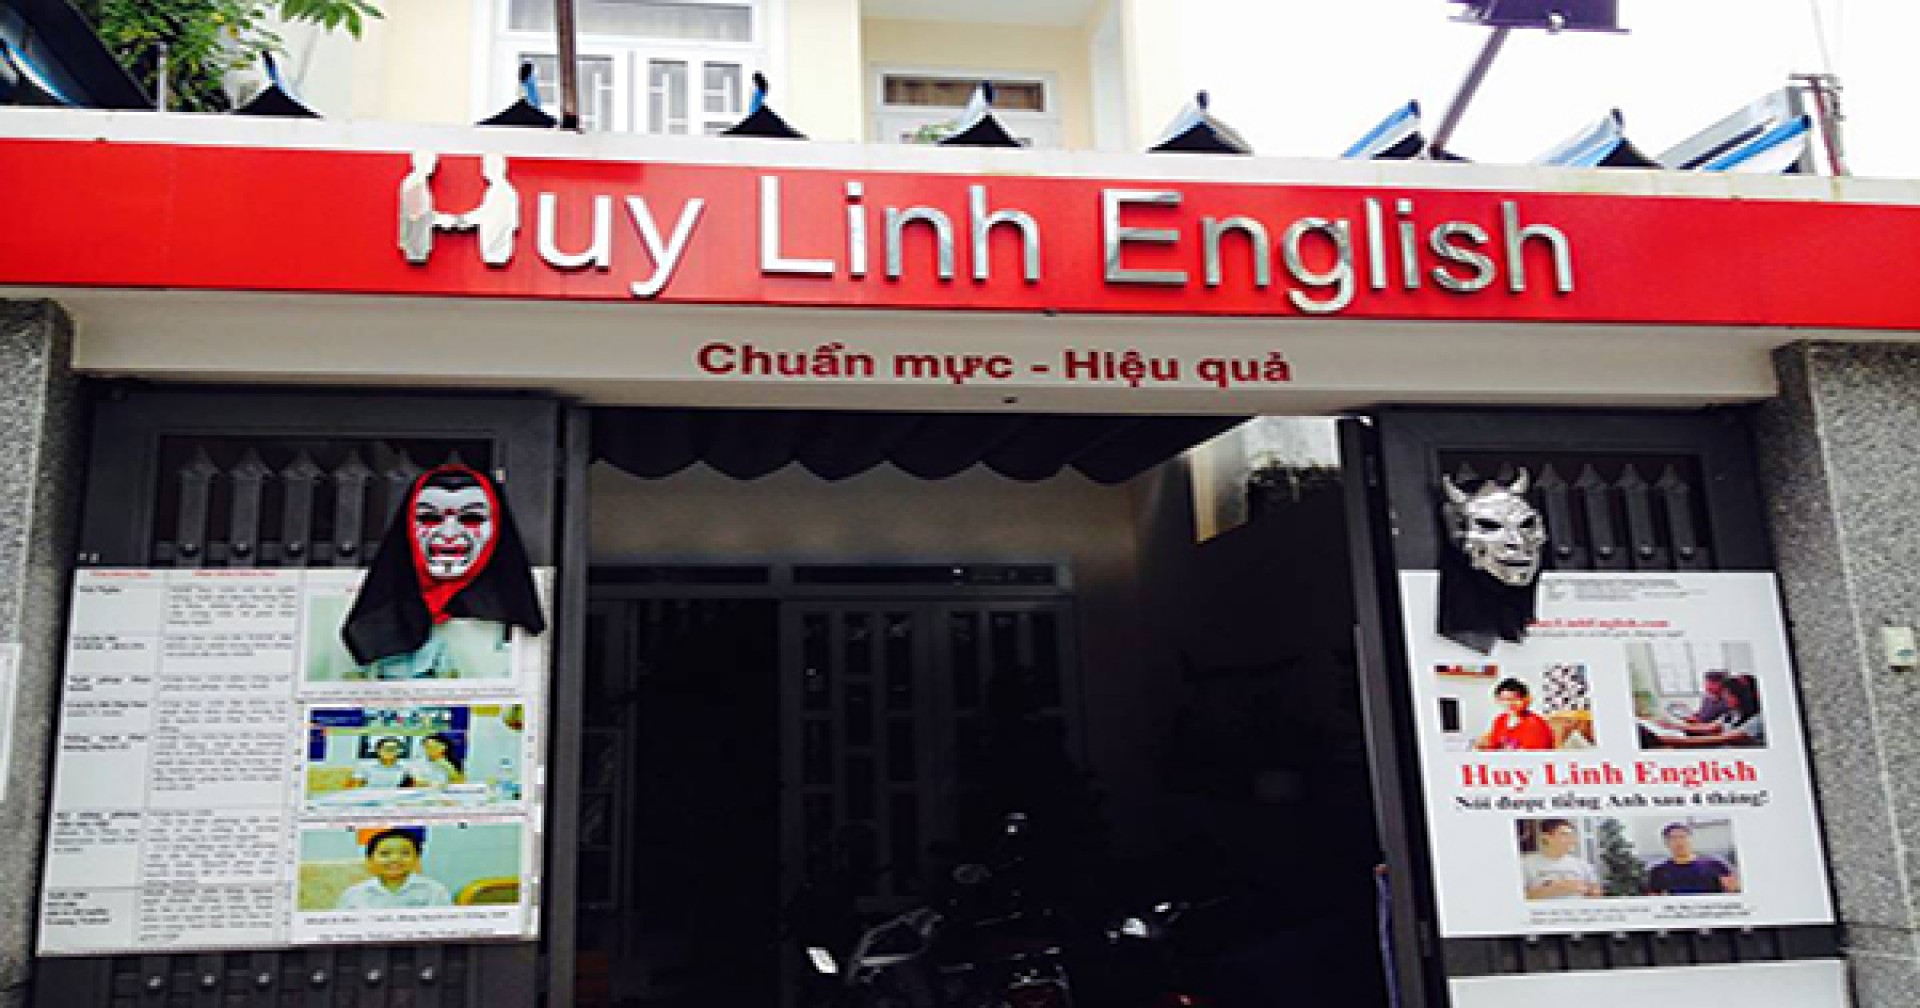 Có điều gì bạn đang bỏ lỡ tại khóa học tiếng Anh giao tiếp của Huy Linh English?